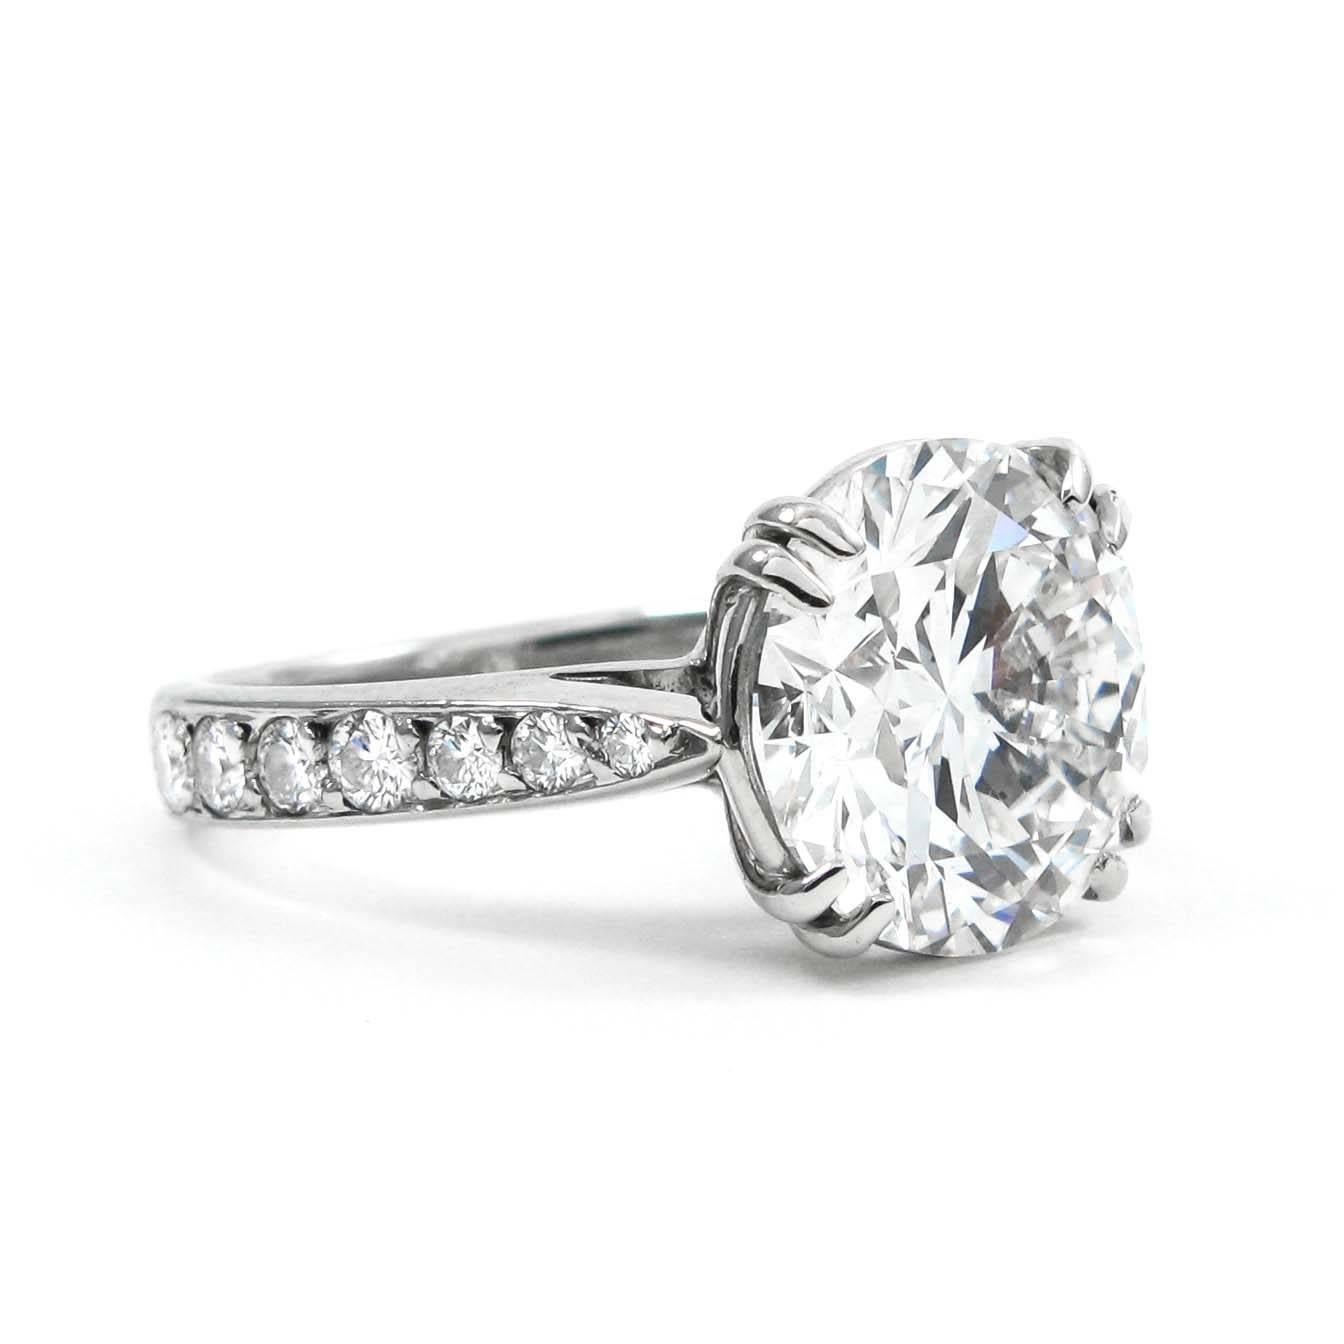 Cet éblouissant et substantiel diamant rond de 4,01 carats de taille brillant est d'un blanc éclatant, d'une propreté parfaite et d'une finition impeccable ! Taillée dans des proportions absolument idéales, elle présente un éclat vraiment phénoménal